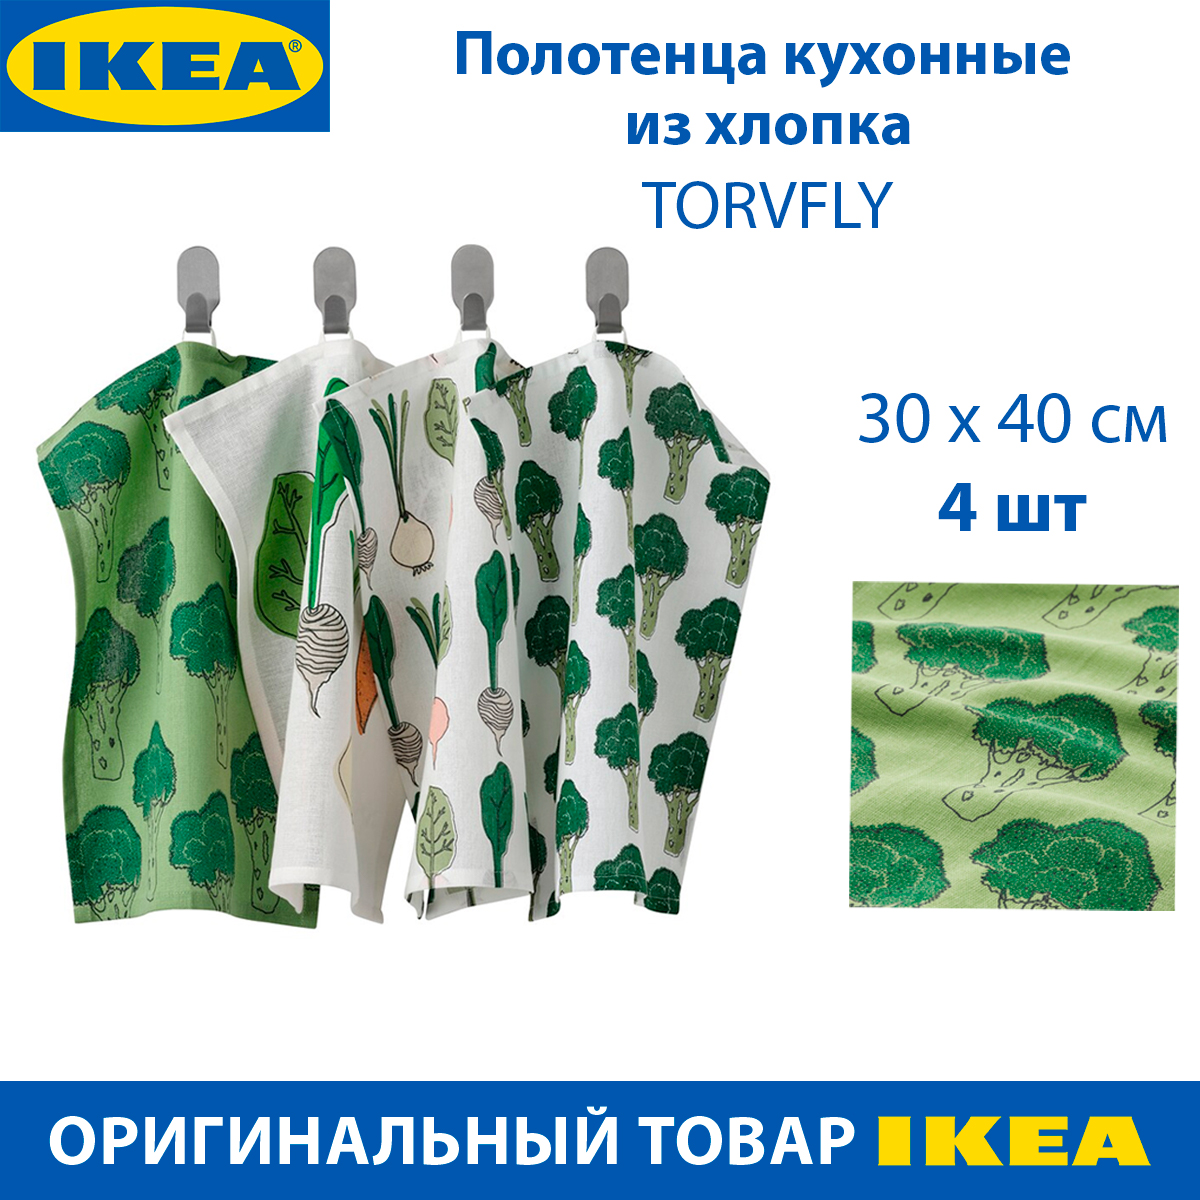 Полотенца кухонные IKEA TORVFLY торвфлай из хлопка бело-зеленые 4 шт